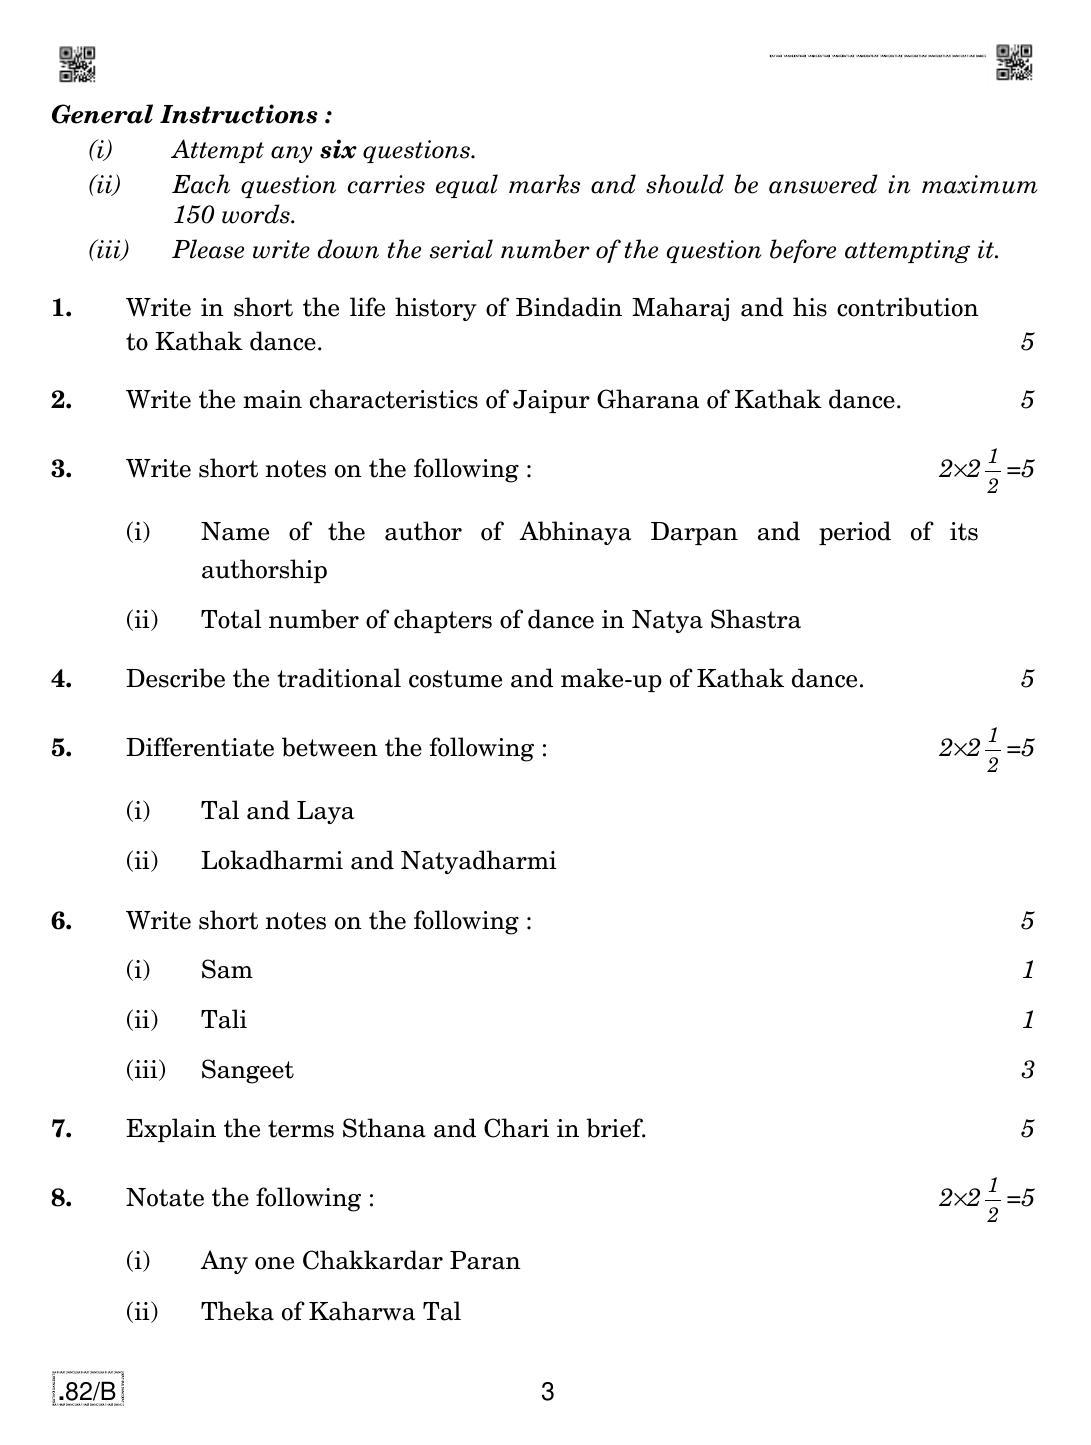 CBSE Class 12 Kathak Dance 2020 Compartment Question Paper - Page 3